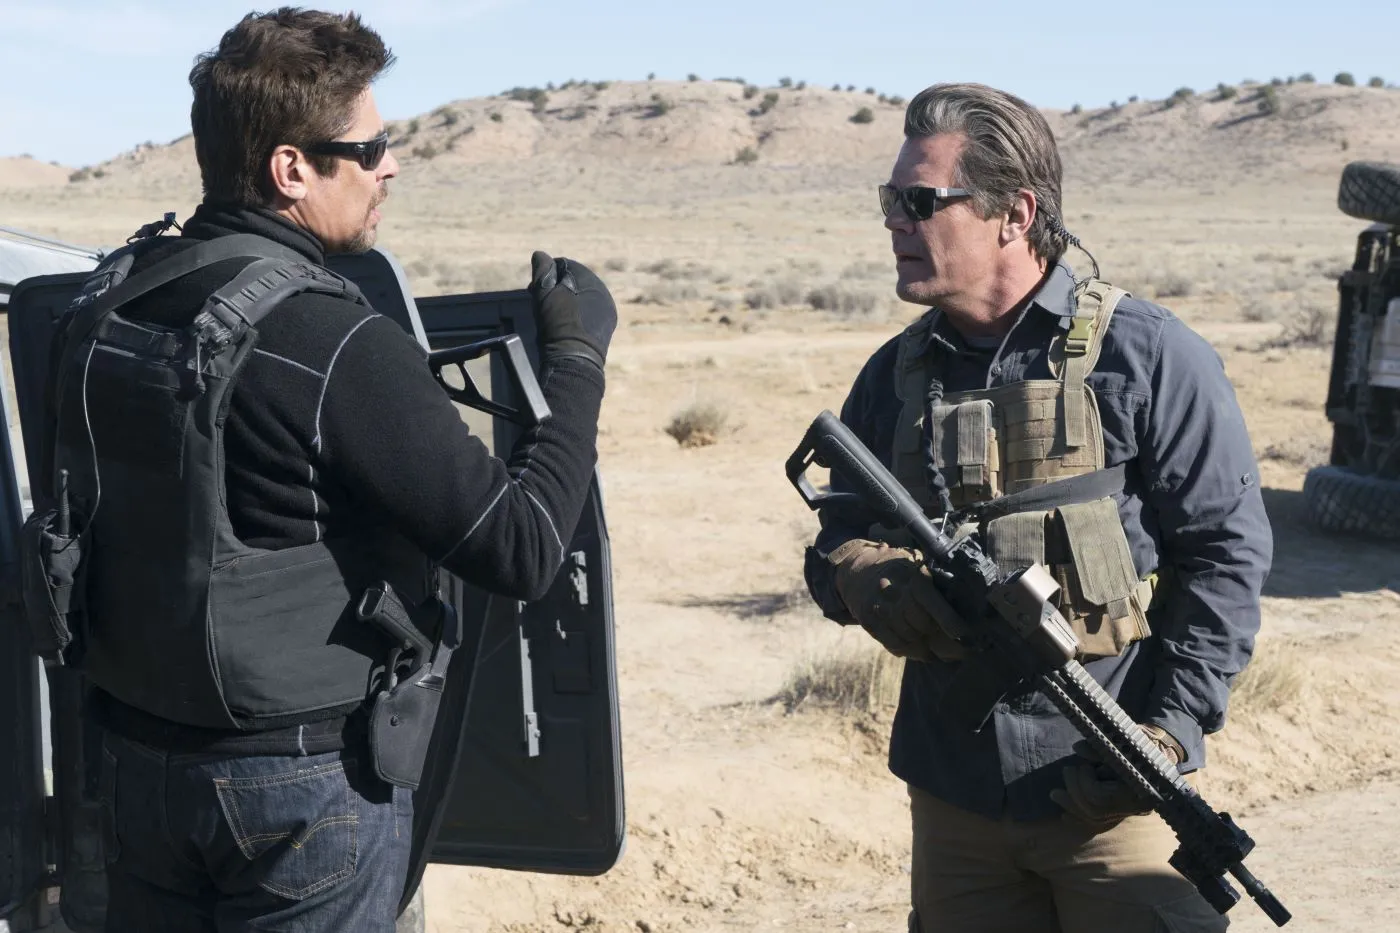 zwei bewaffnete Männer in schusssicheren Westen und mit Sonnenbrille unterhalten sich vor karger Landschaft